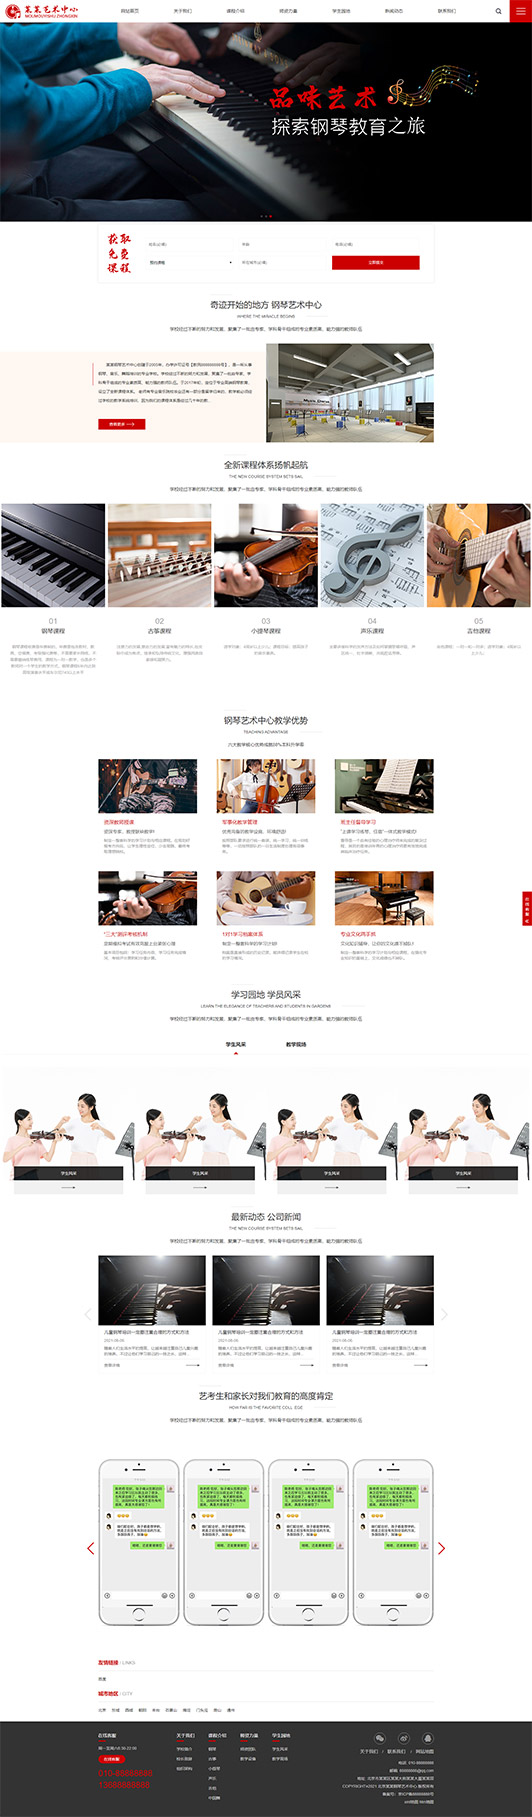 怒江钢琴艺术培训公司响应式企业网站